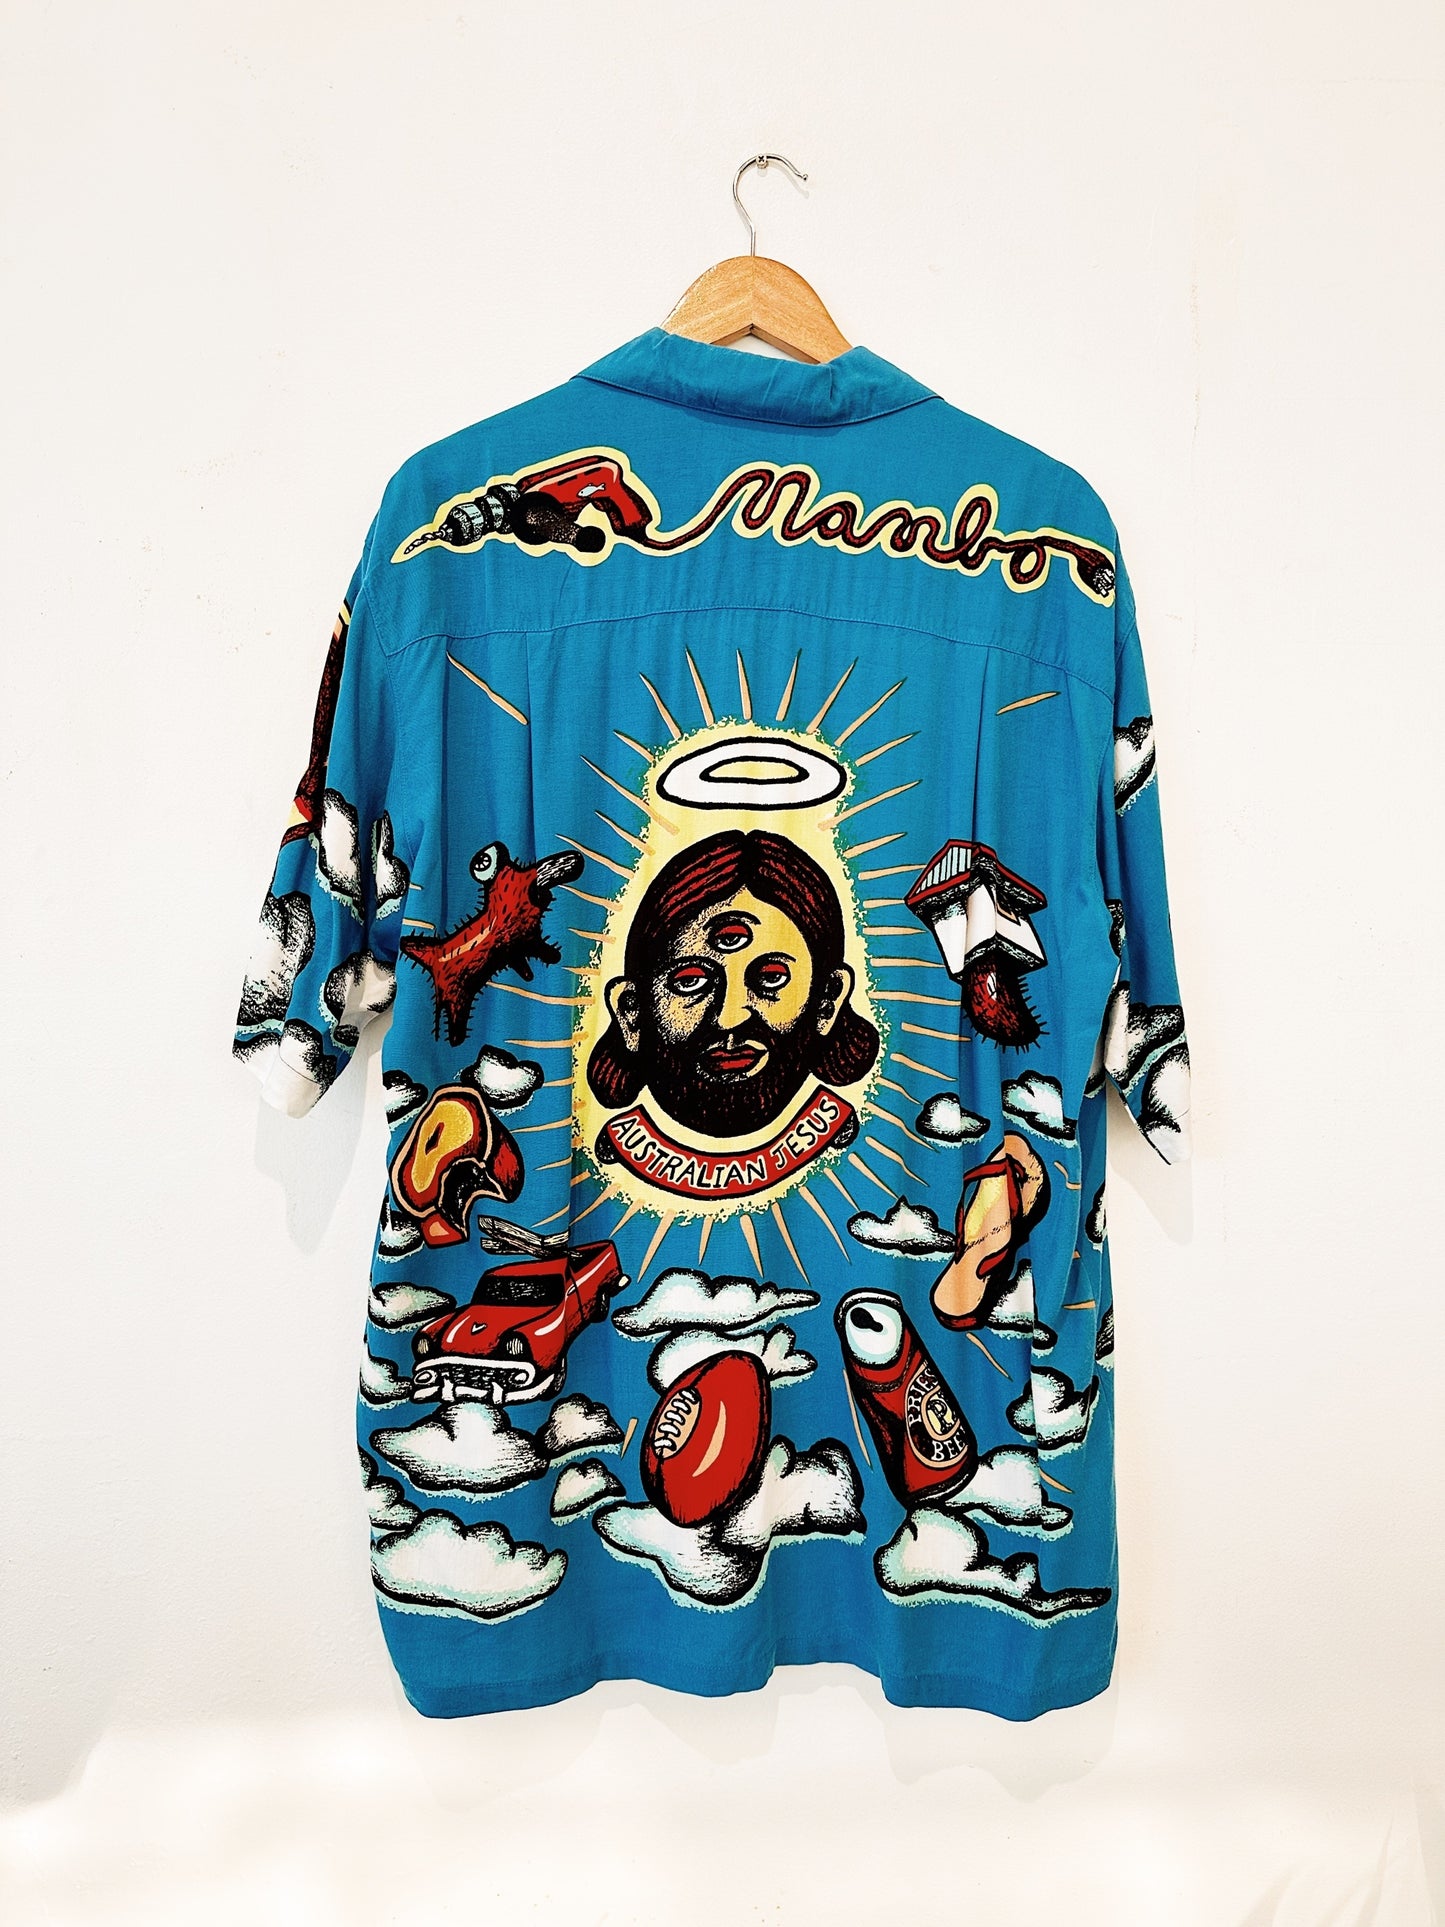 Reg Mombassa "Australian Jesus" Vintage Mambo Loud Shirt 28